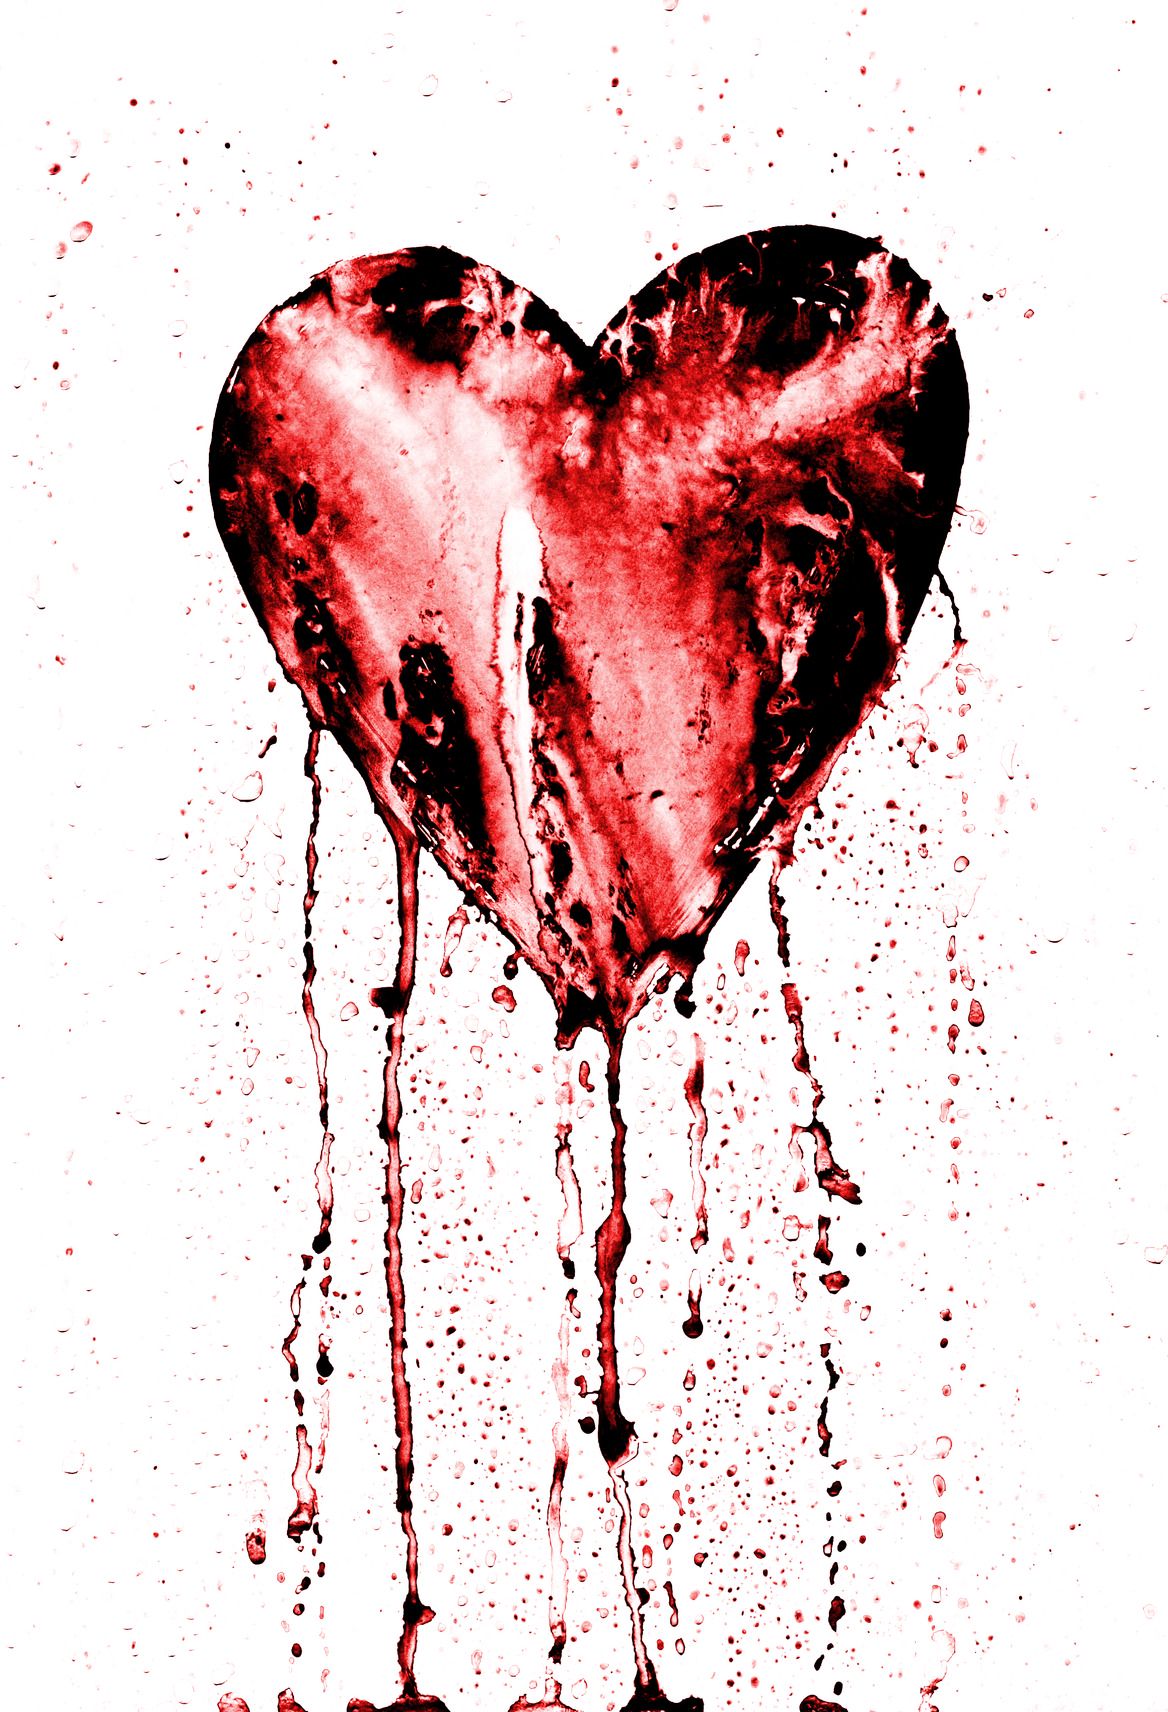 Hình nền trái tim rỉ máu: Hình nền trái tim rỉ máu là một tác phẩm nghệ thuật cực kỳ độc đáo và thu hút. Được chế tác từ những chi tiết tinh tế, tác phẩm này sẽ cho bạn cái nhìn mới mẻ về một chủ đề vô cùng cảm động. Hãy thử lắng nghe tâm trạng của mình khi thưởng thức tác phẩm này.